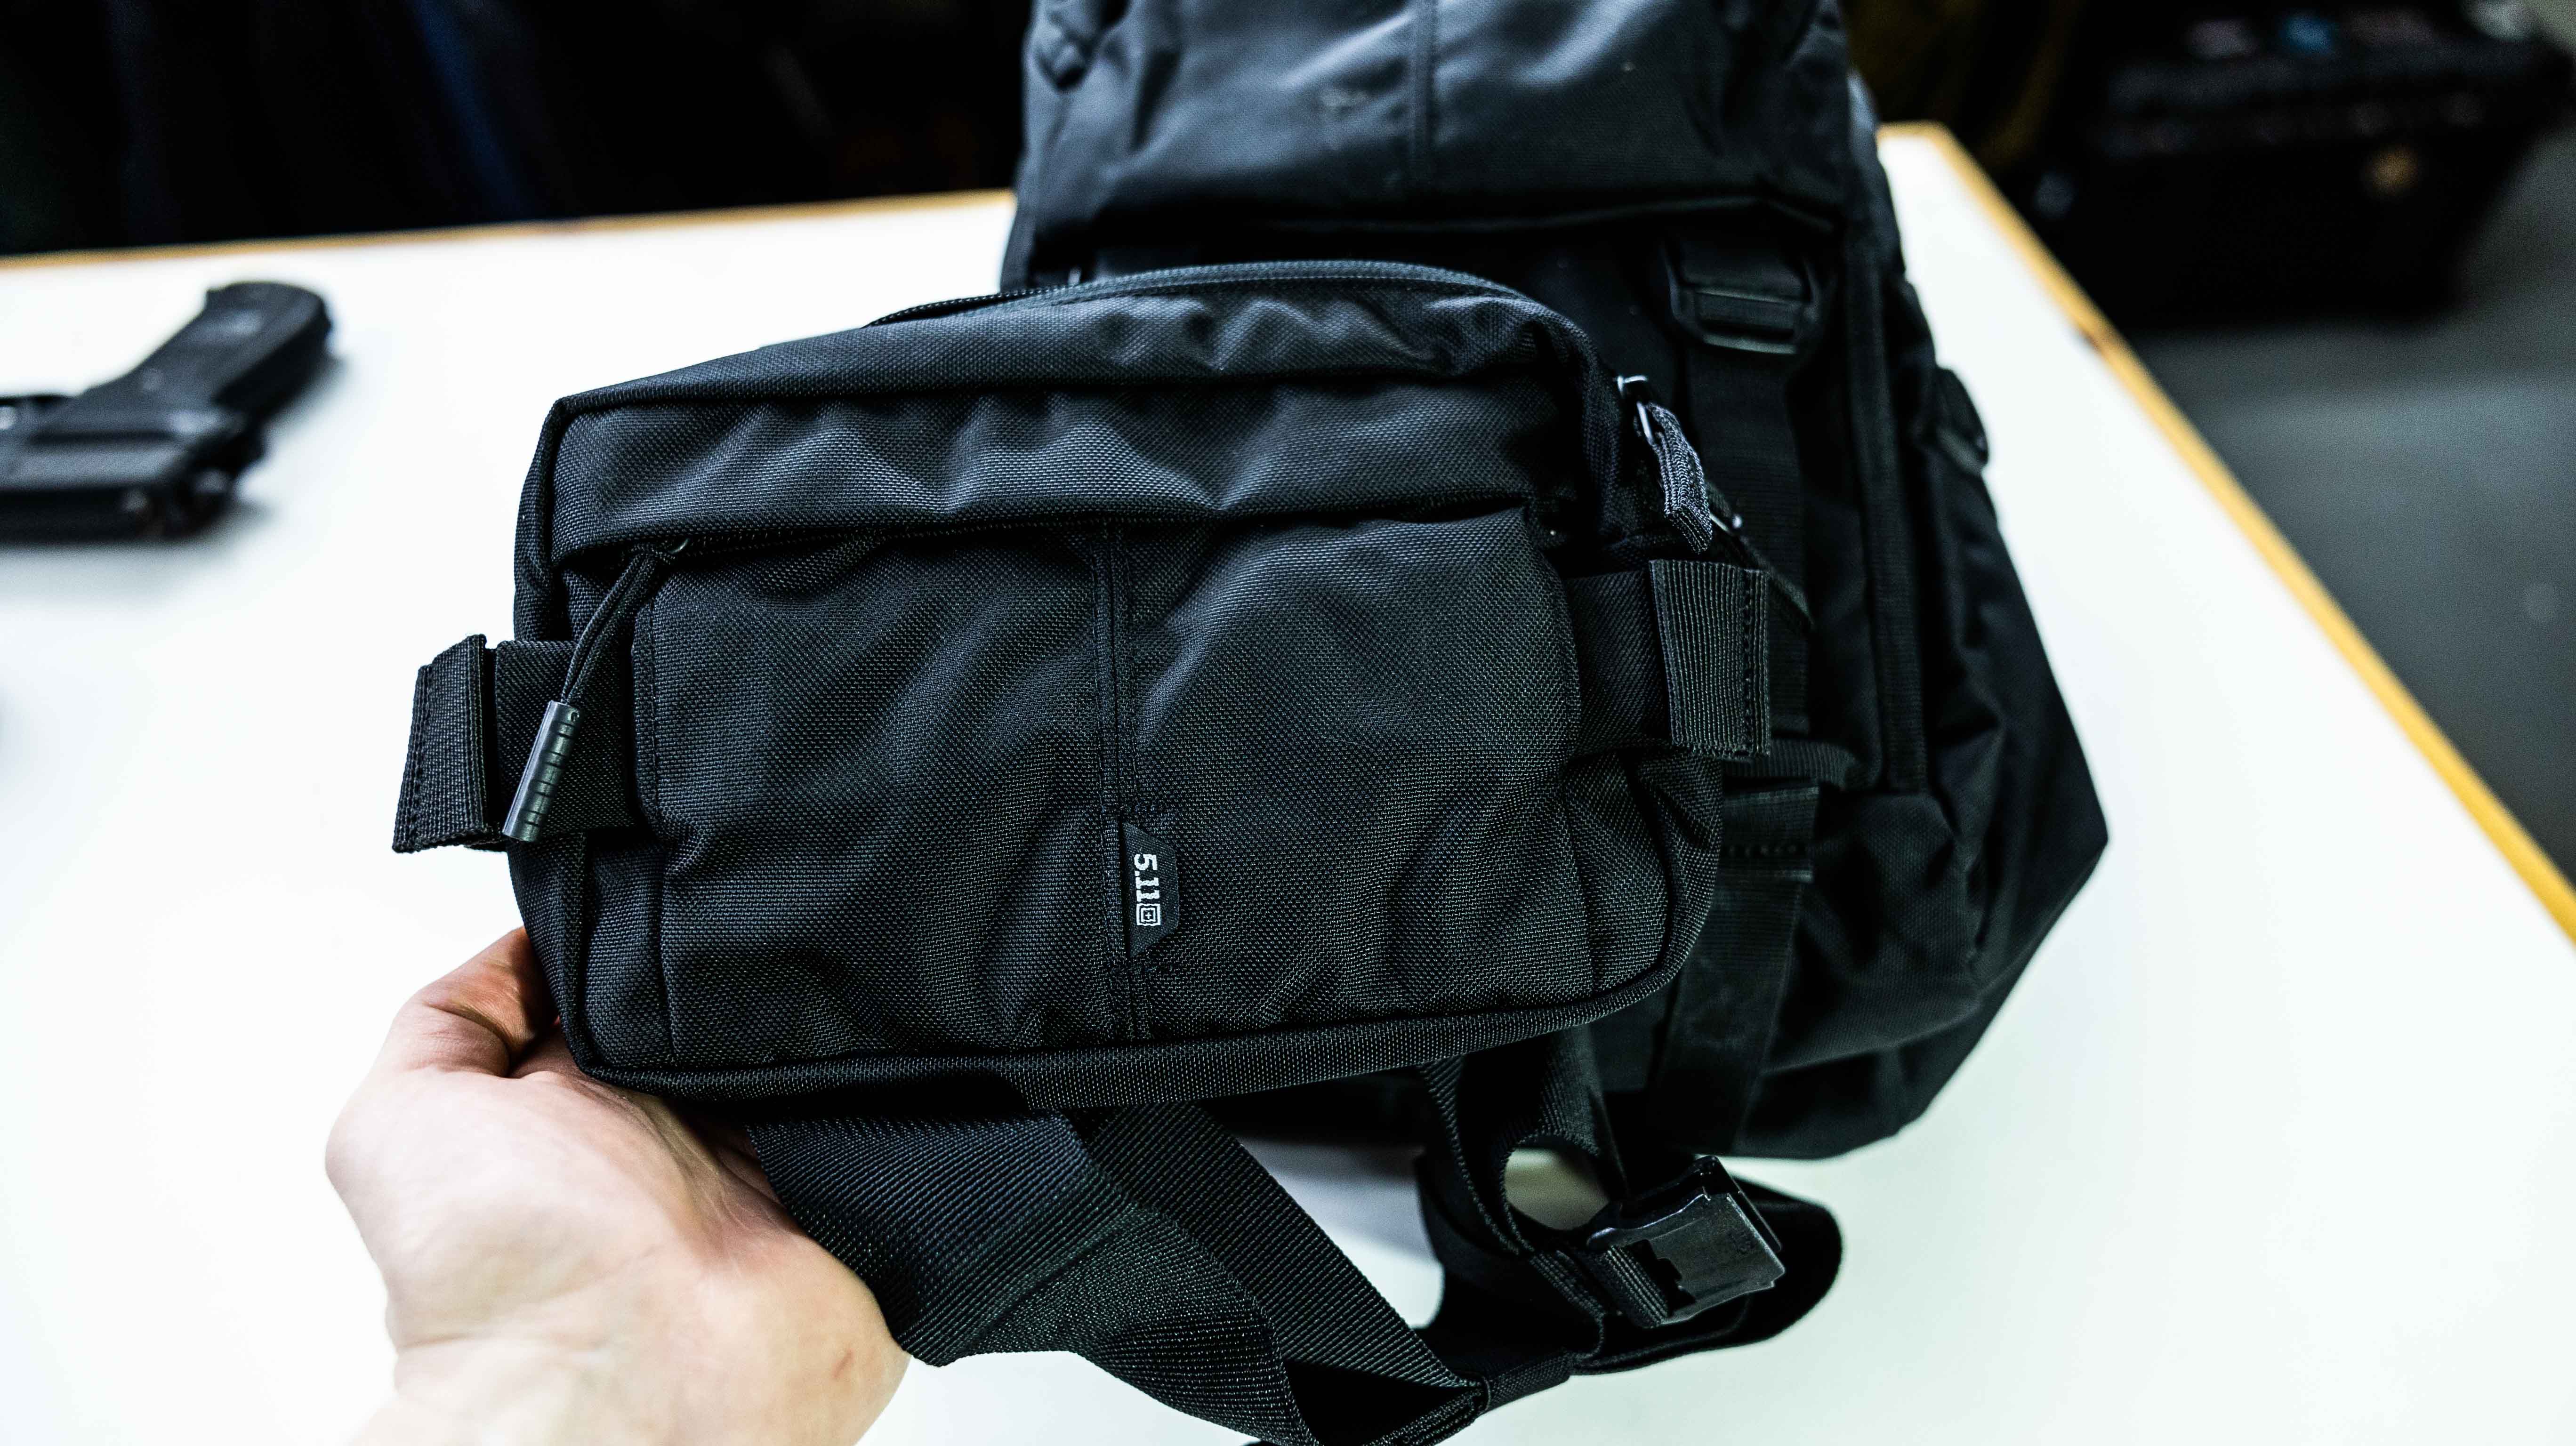 5.11 LV18 2.0 30L Backpack